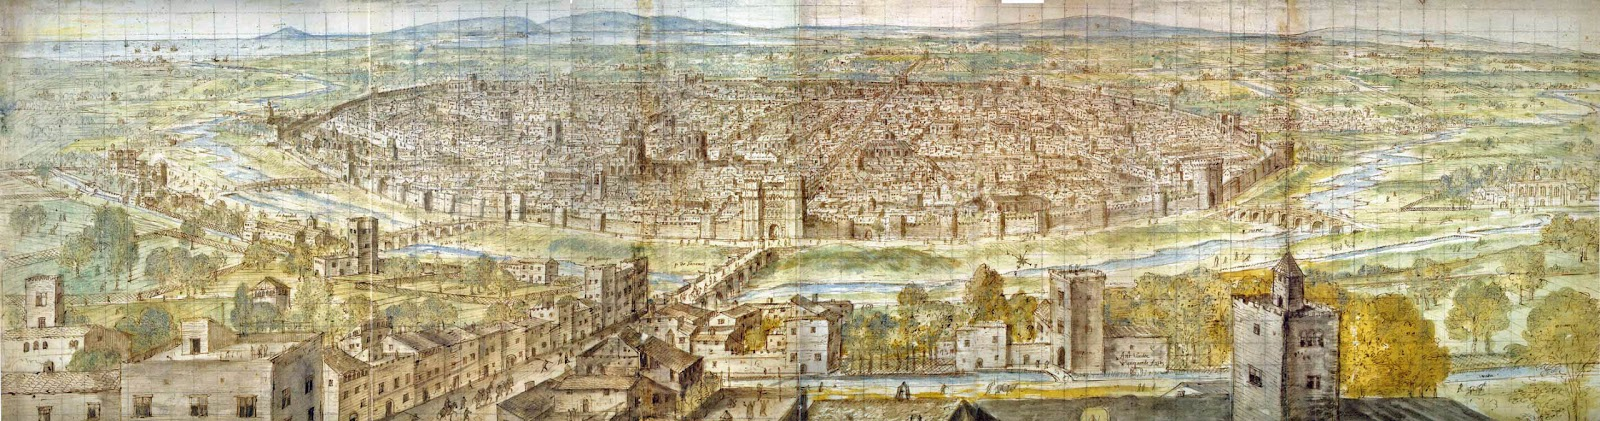 Valencia (1563), obra de Wyngaerde. Fuente Wikimedia Commons